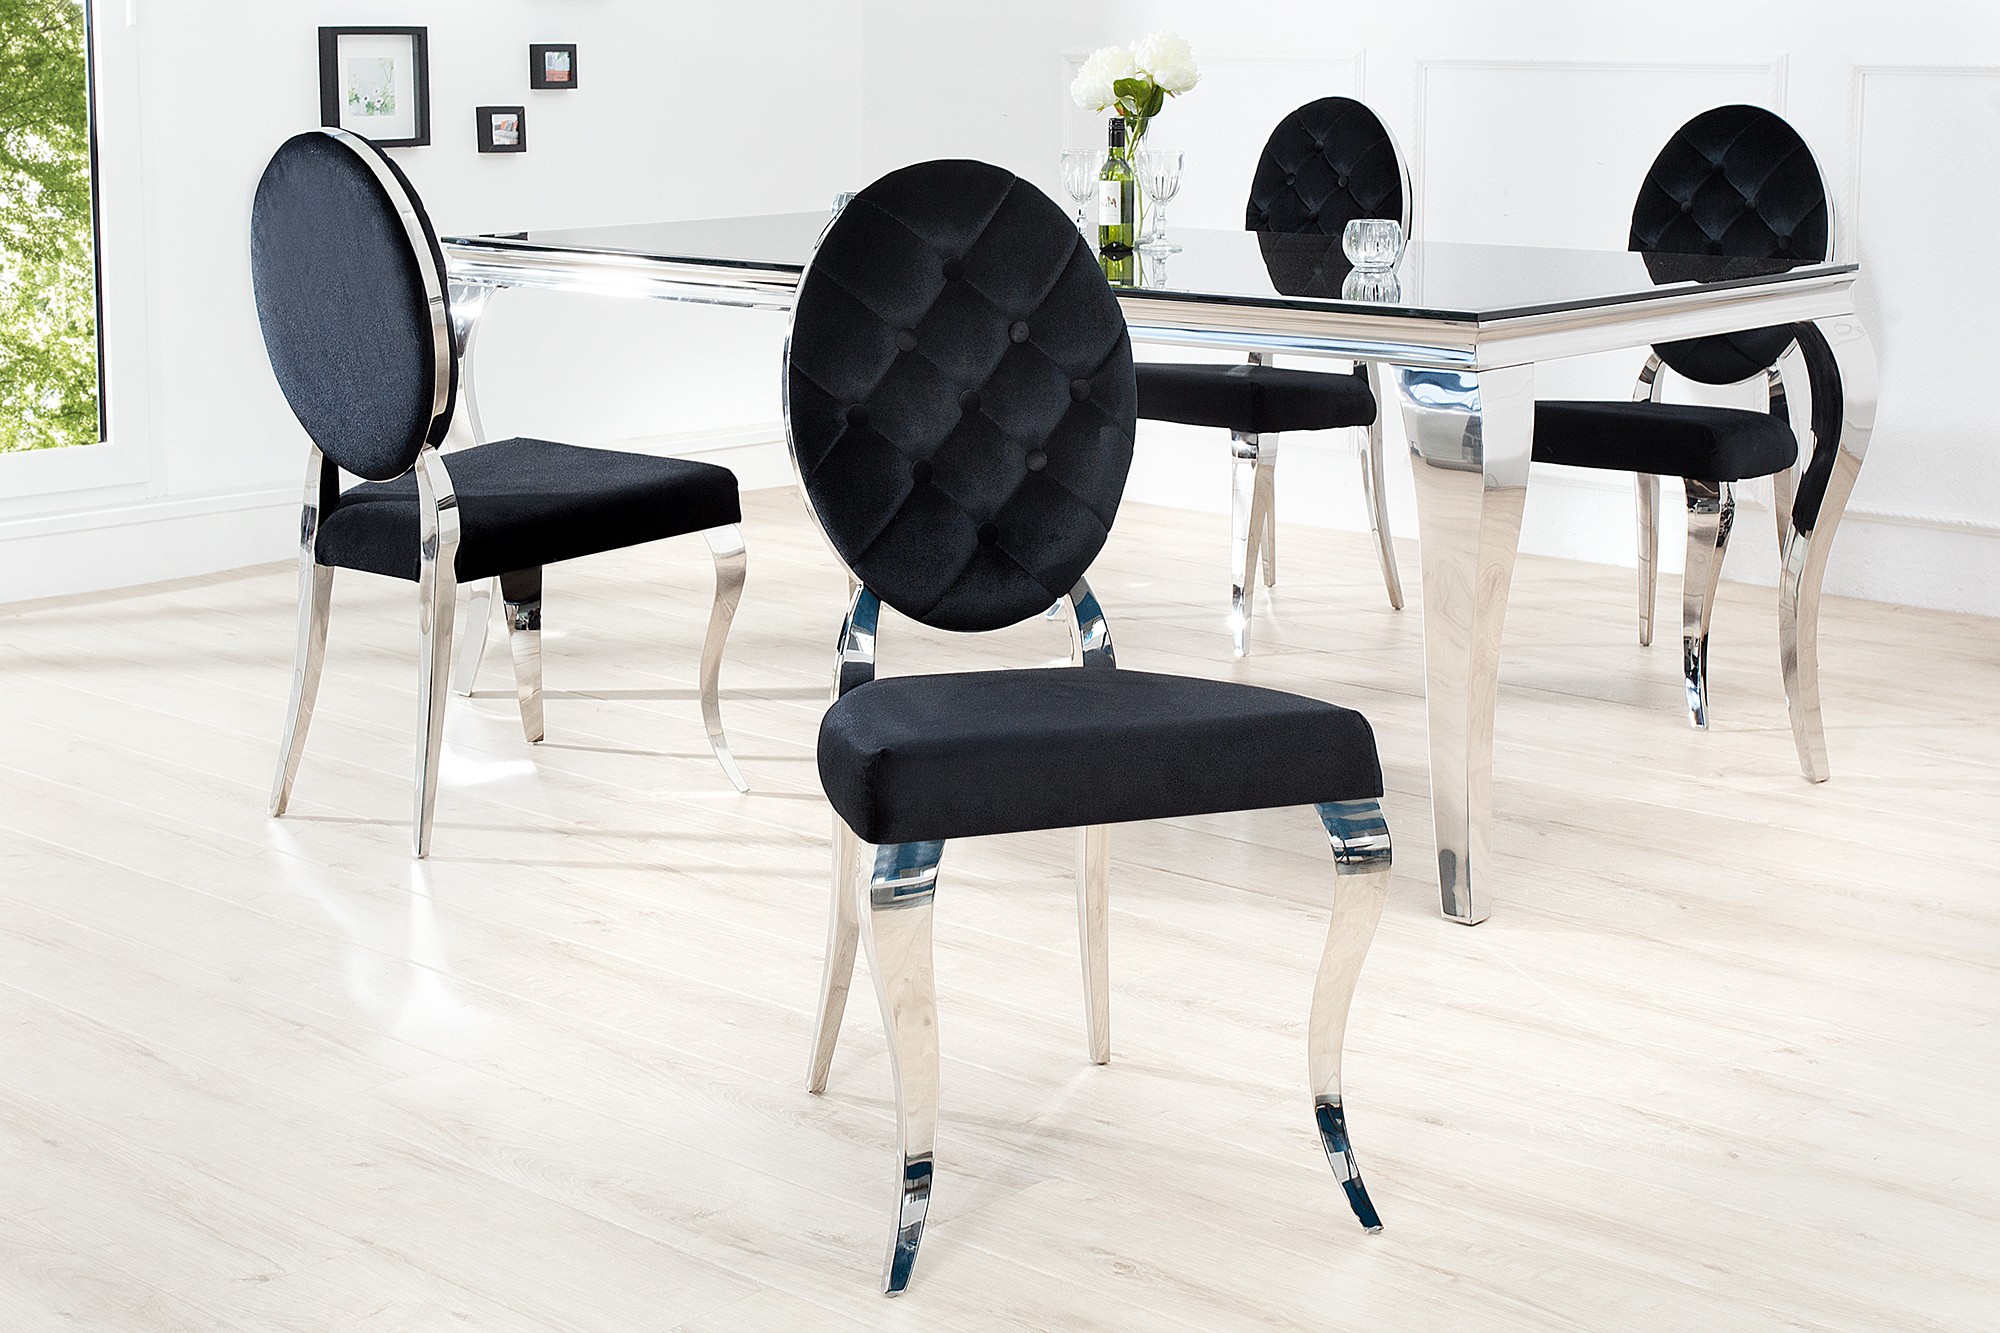 Estila Luxusní jídelní židle Modern Barock II černá